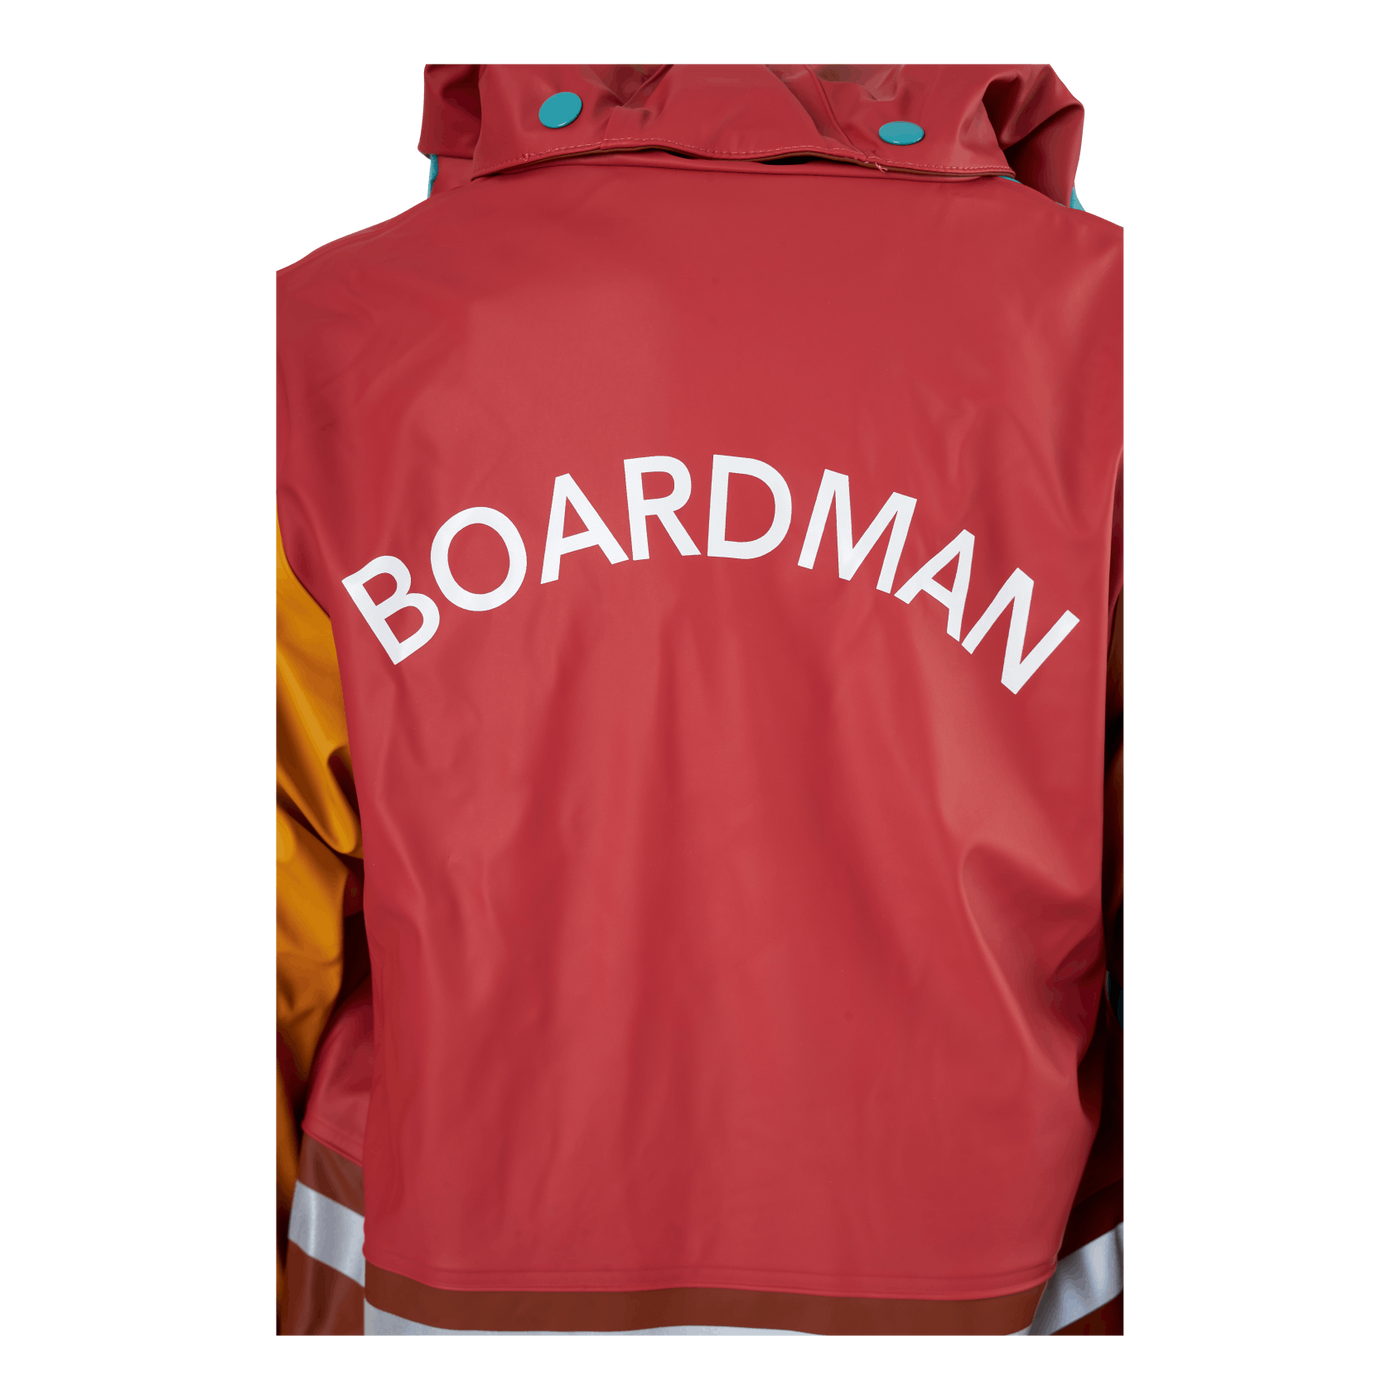 Boardman Kd Mult Set Baked Pink